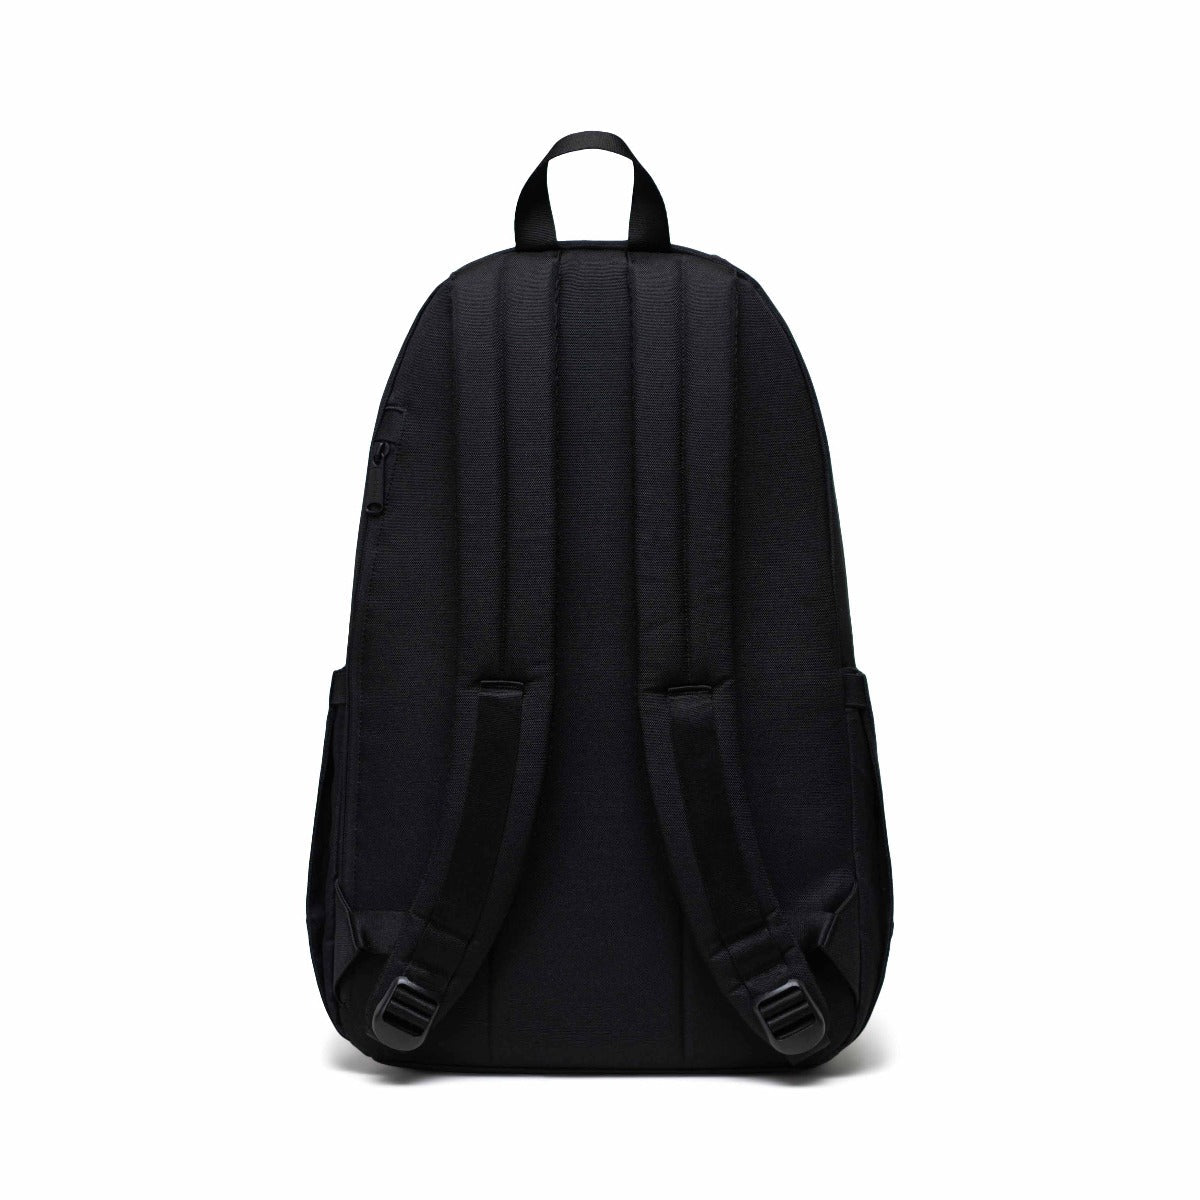 Herschel Seymour Backpack in Black